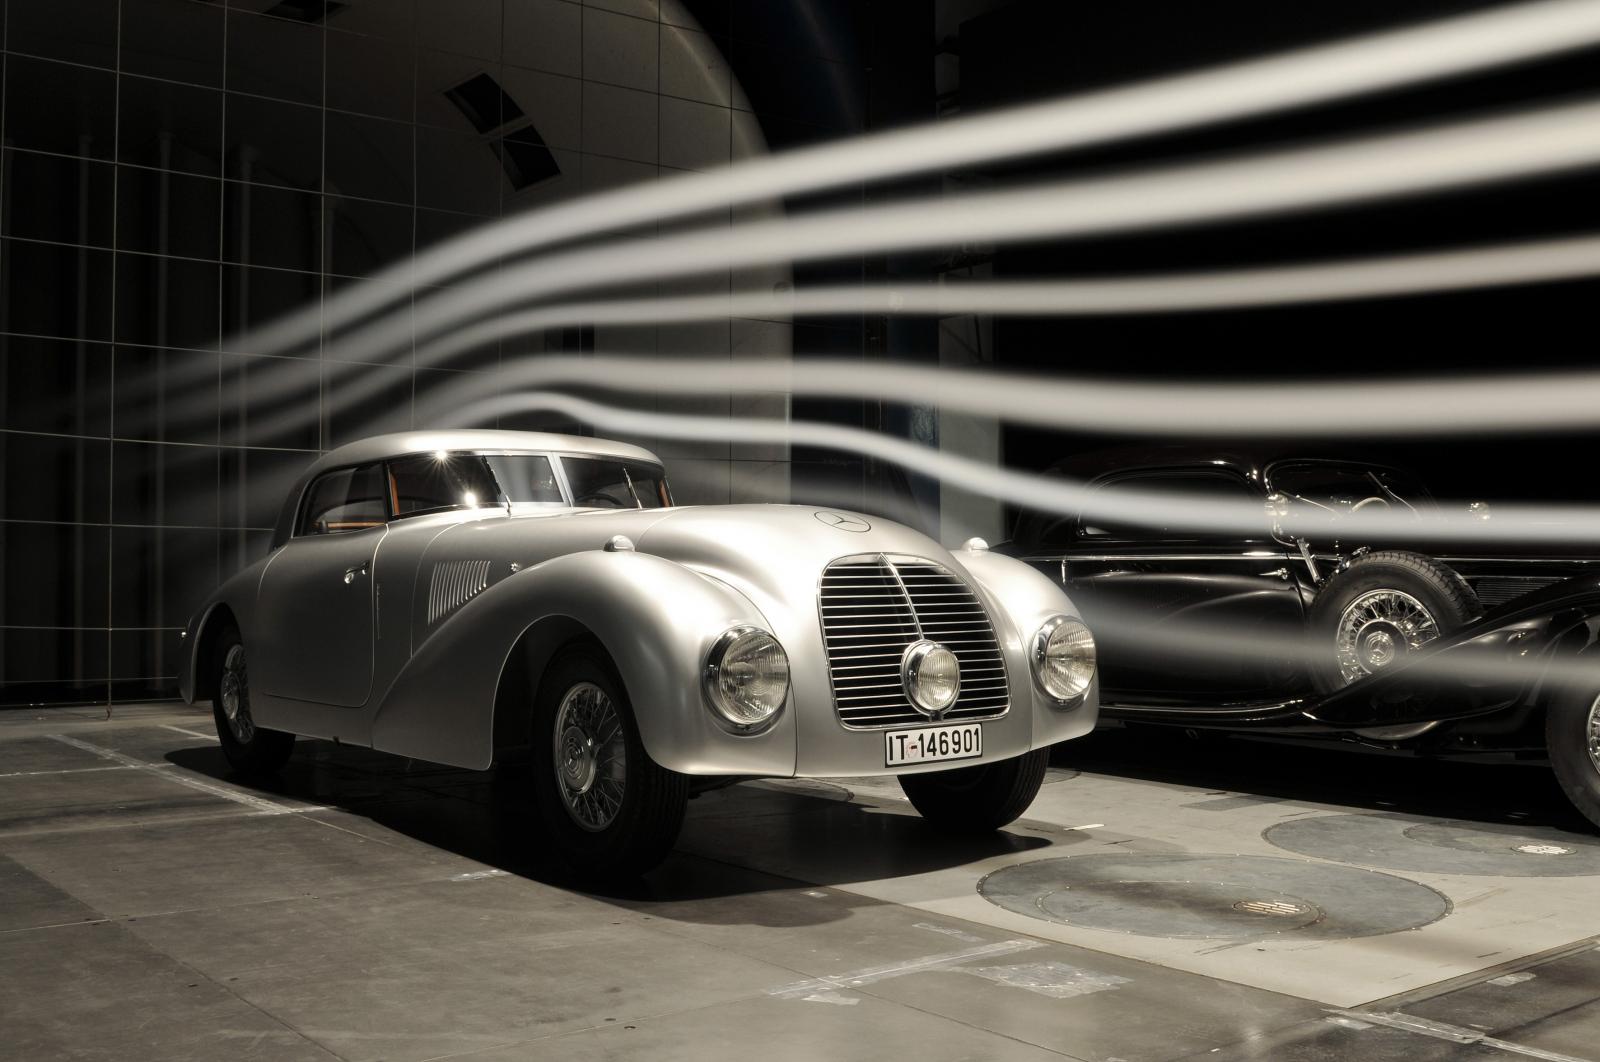 Mercedes ни припомнят за суперкола от времето на Хитлер